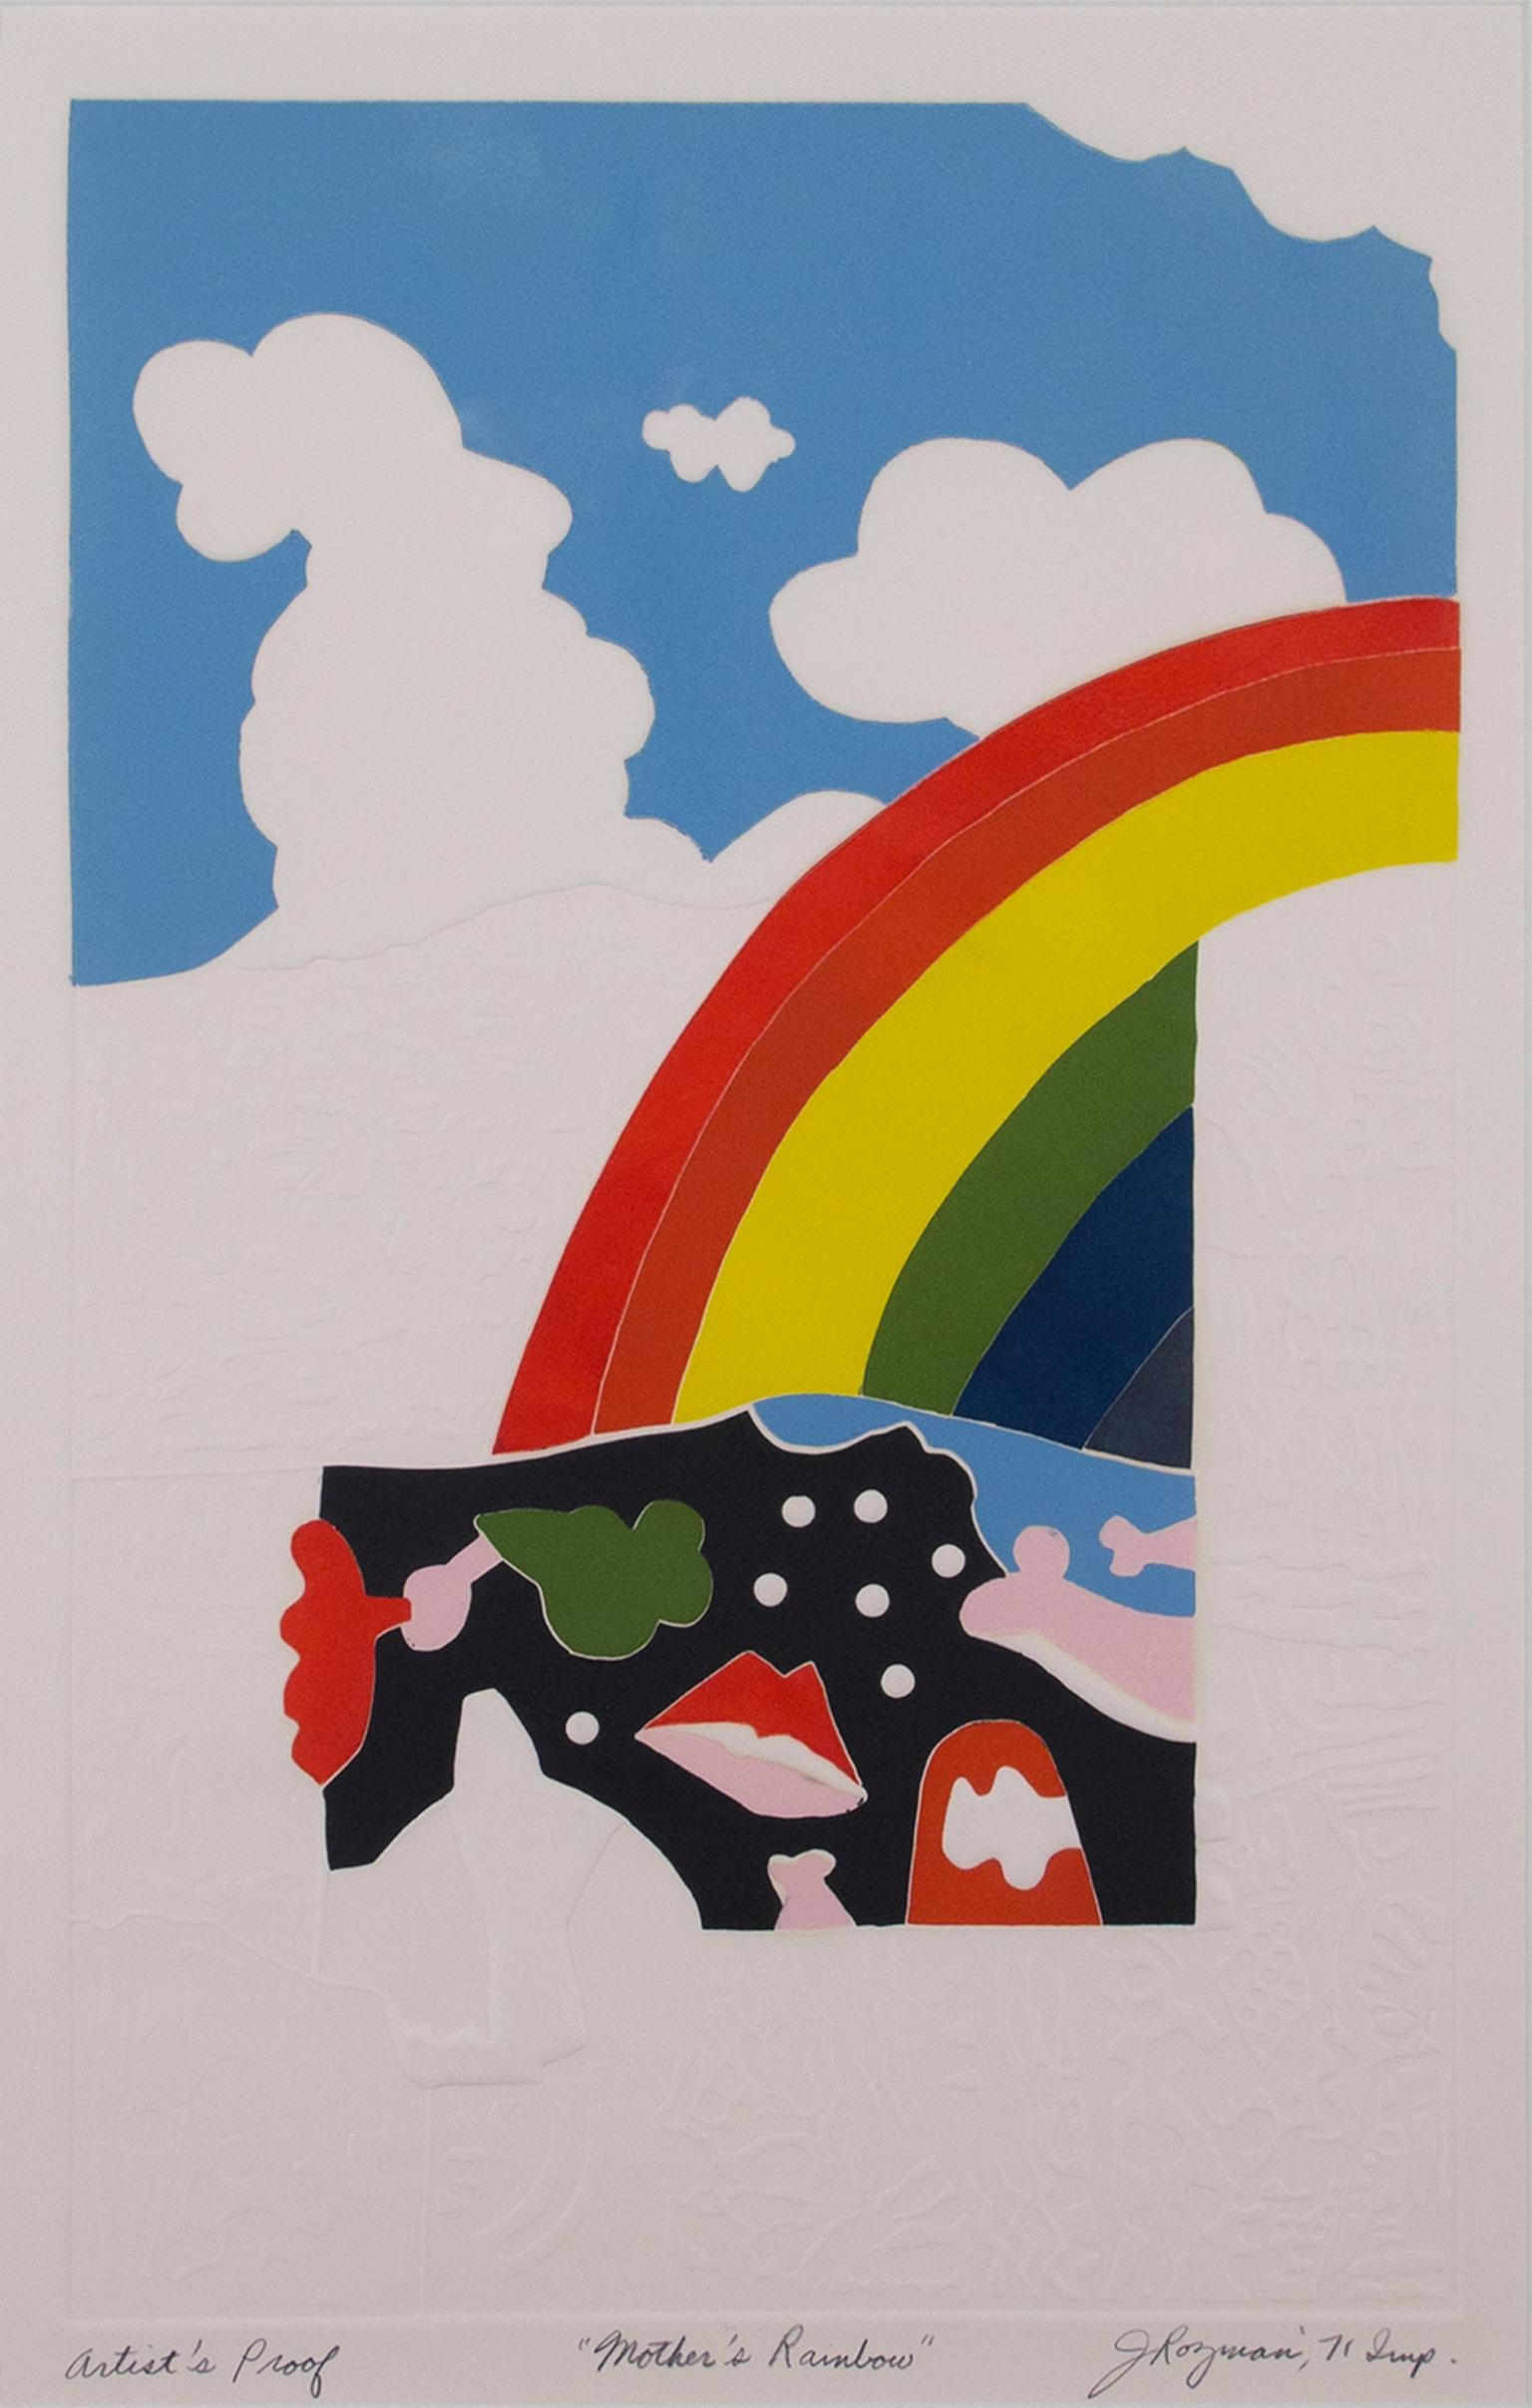 "Mother's Rainbow, A.P." ist eine Originalradierung und -prägung von Joesph Rozman. Der Künstler hat das Kunstwerk unterhalb des Bildes signiert, betitelt und datiert. Dies ist der Beweis eines Künstlers. Das Kunstwerk zeigt einen Regenbogen, einen